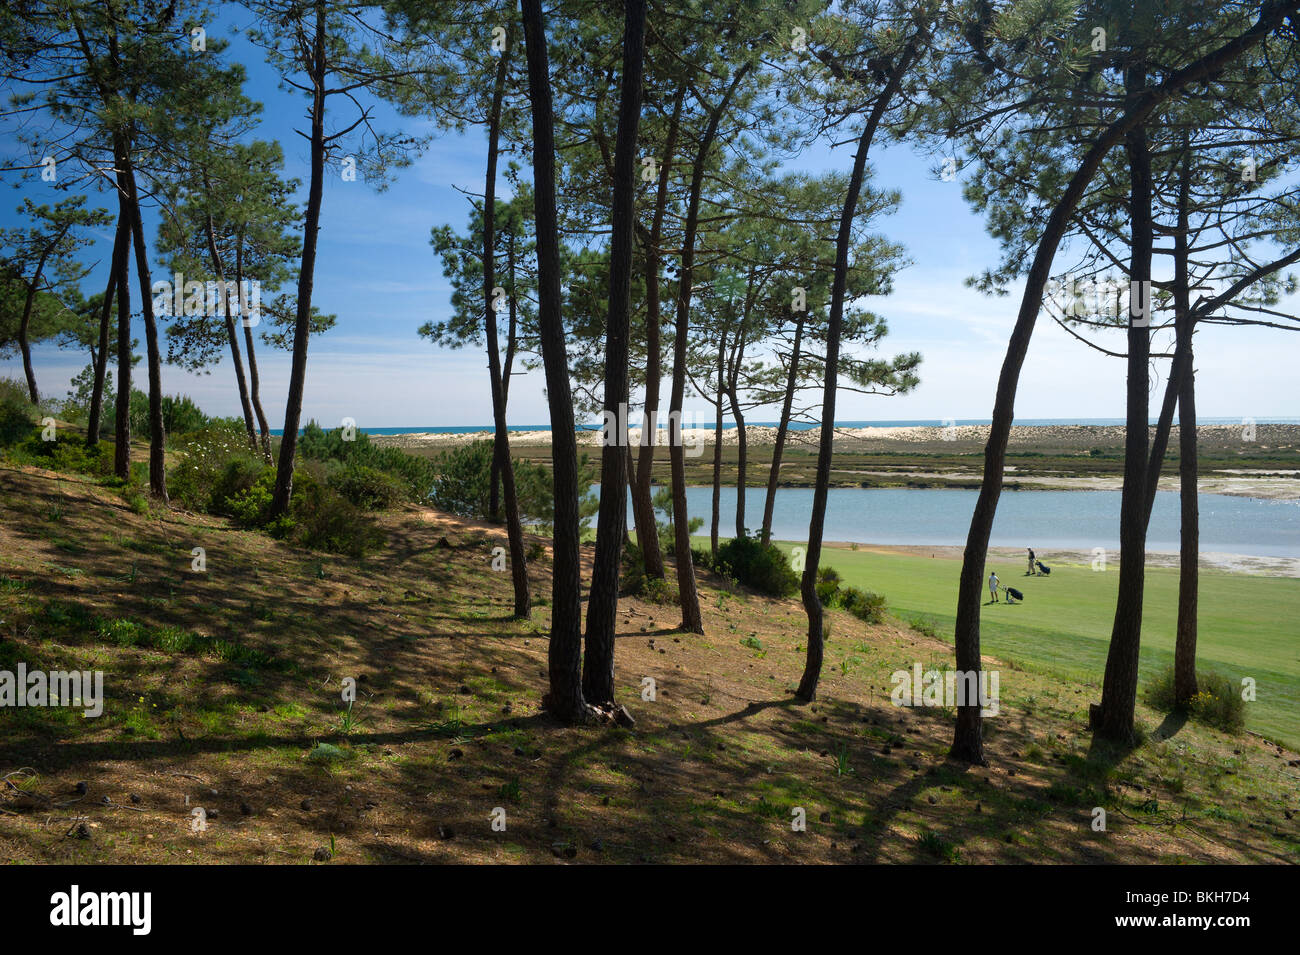 Portugal, el Algarve, Quinta do Lago, los pinos y al campo de golf de San Lorenzo Foto de stock